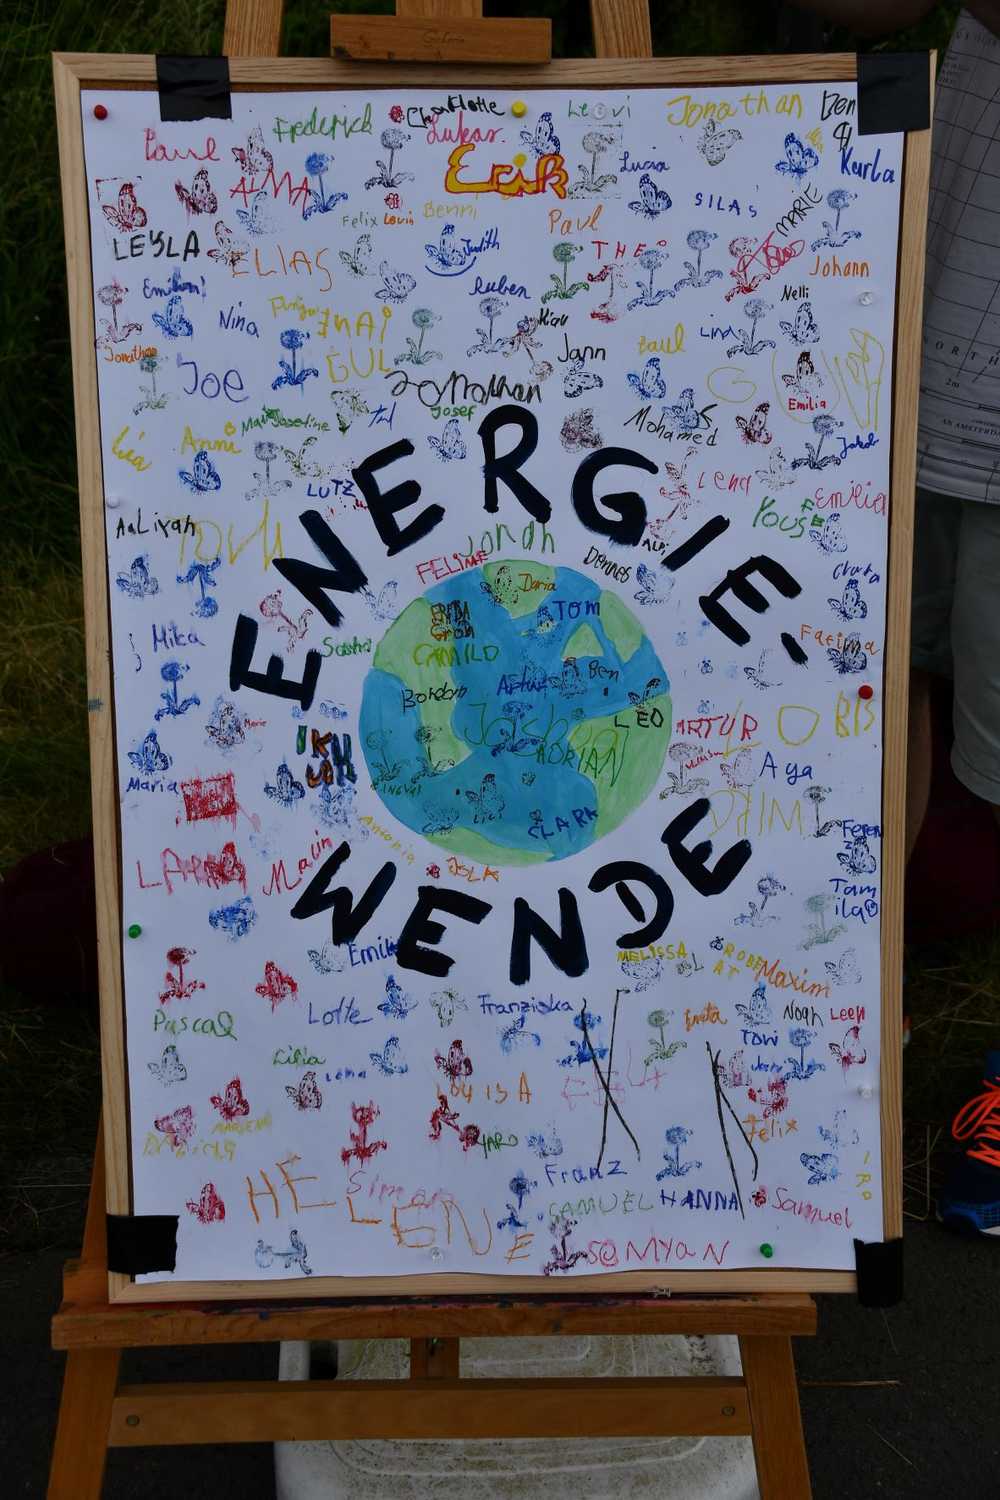 An der "Energiewende" beteiligten sich besonders viele junge Marburger*innen. Sie warfen die Ölfässer ab, packten sie in die Tonne und ließen so die erneuerbaren Energien aufsteigen.